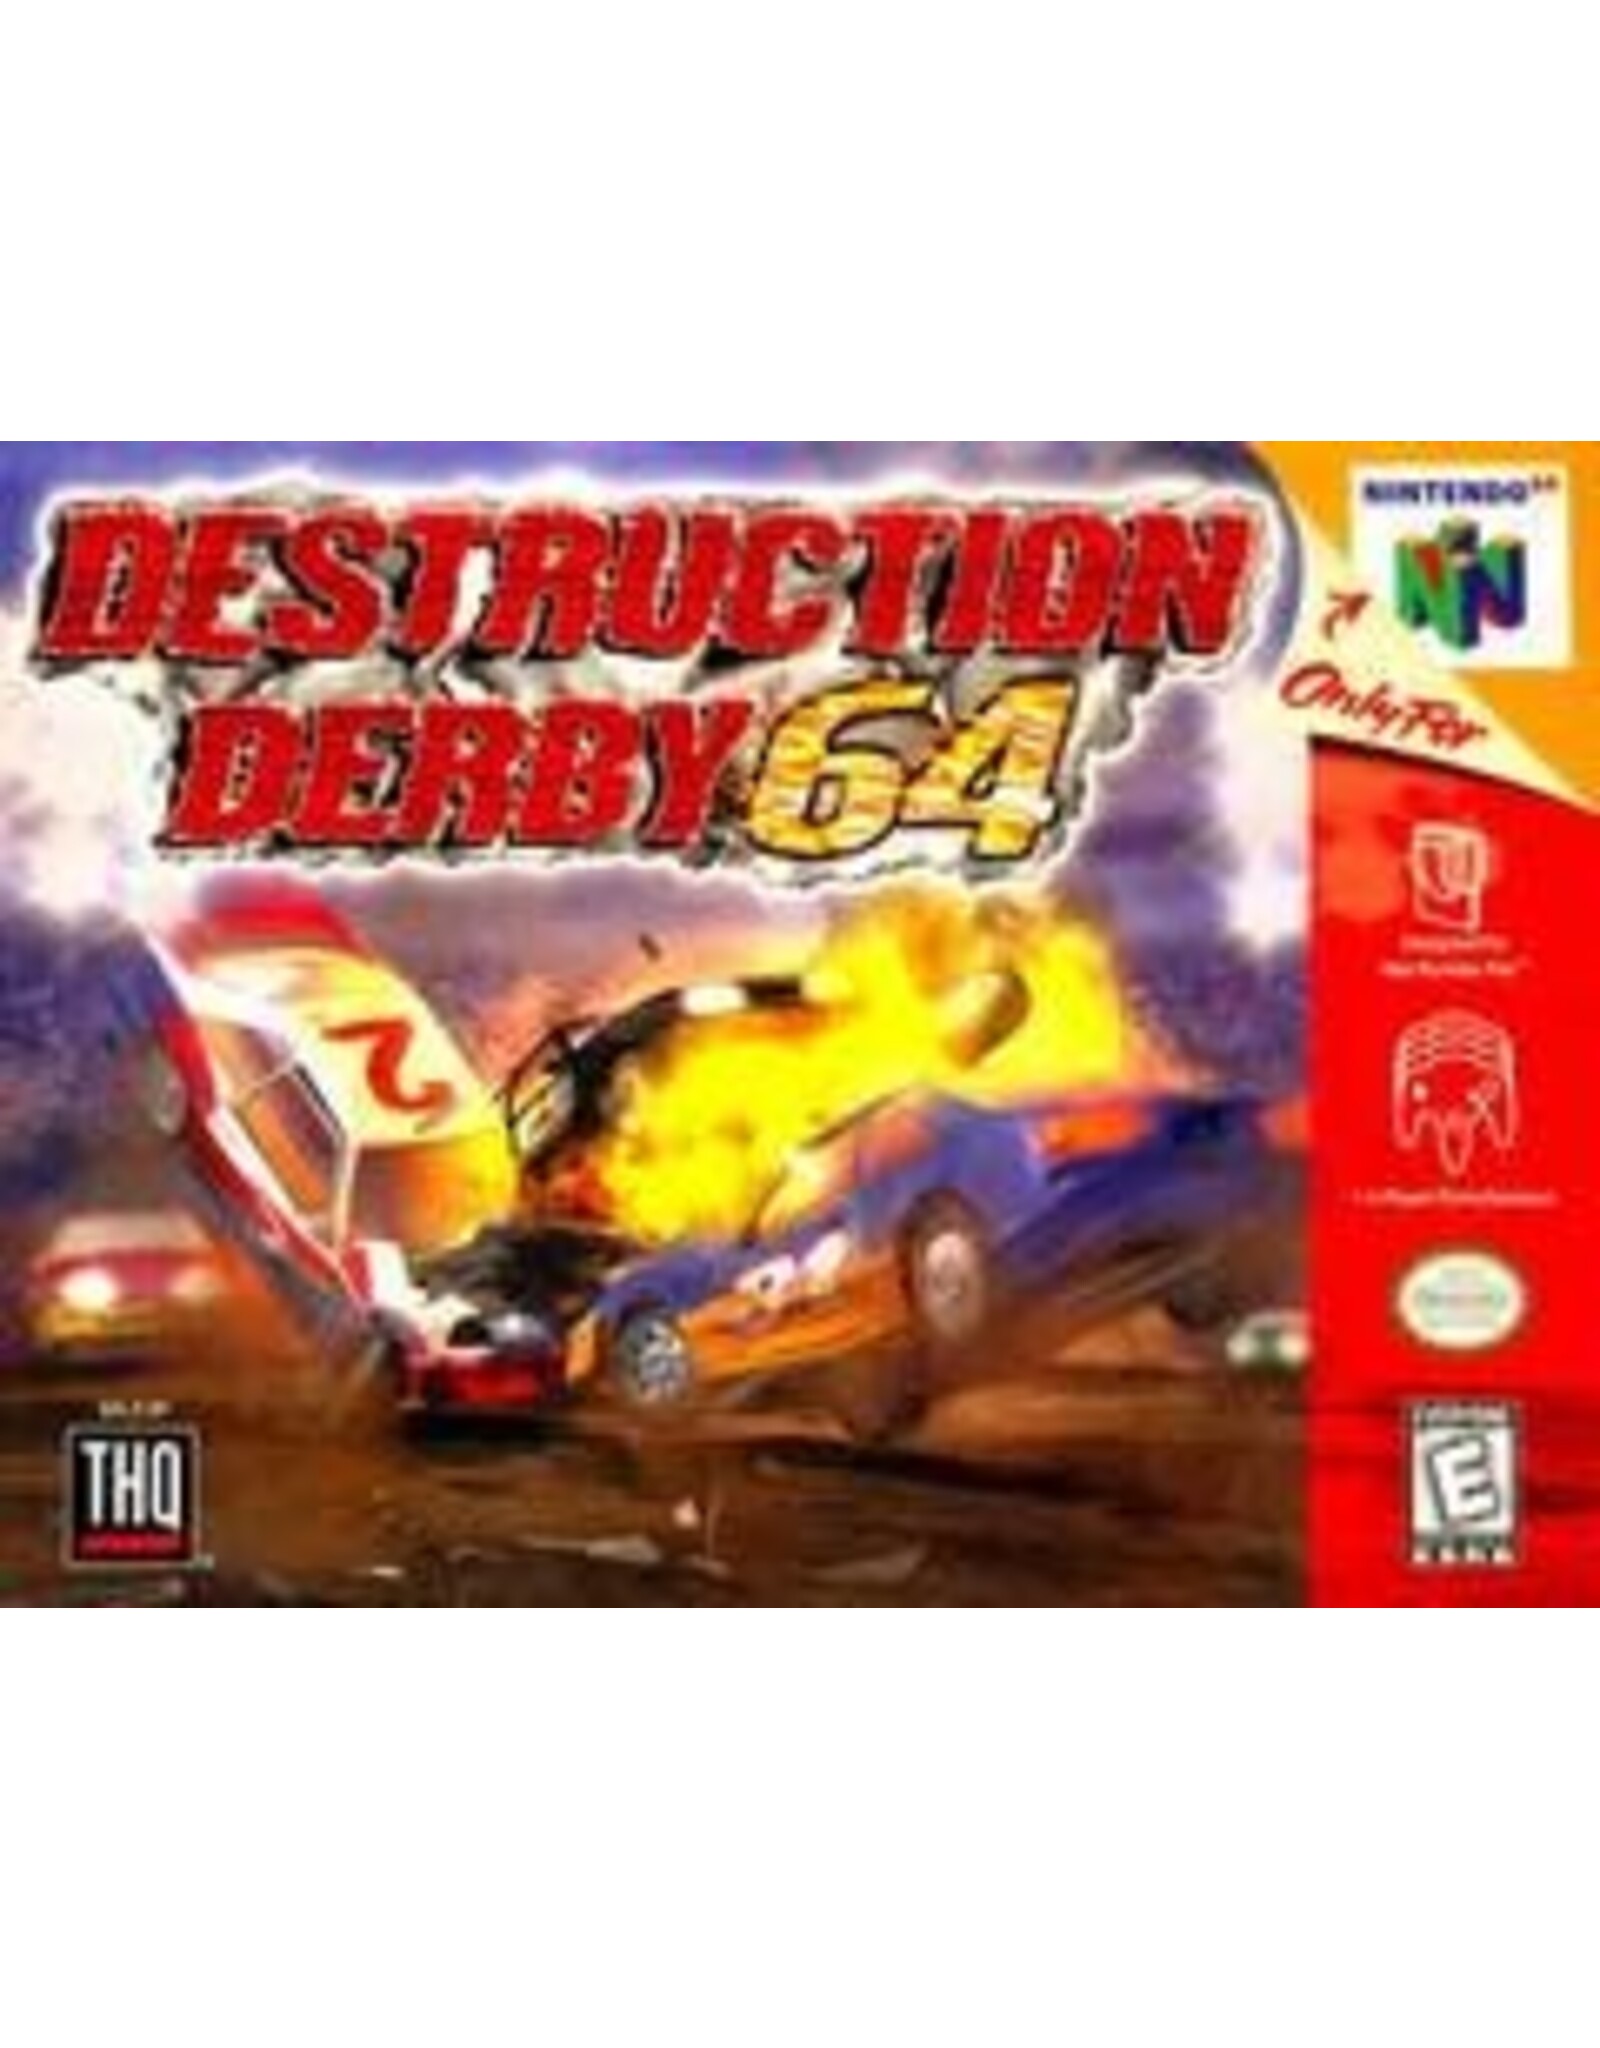 Nintendo 64 Destruction Derby 64 (Cart Only, Discoloured Cart)